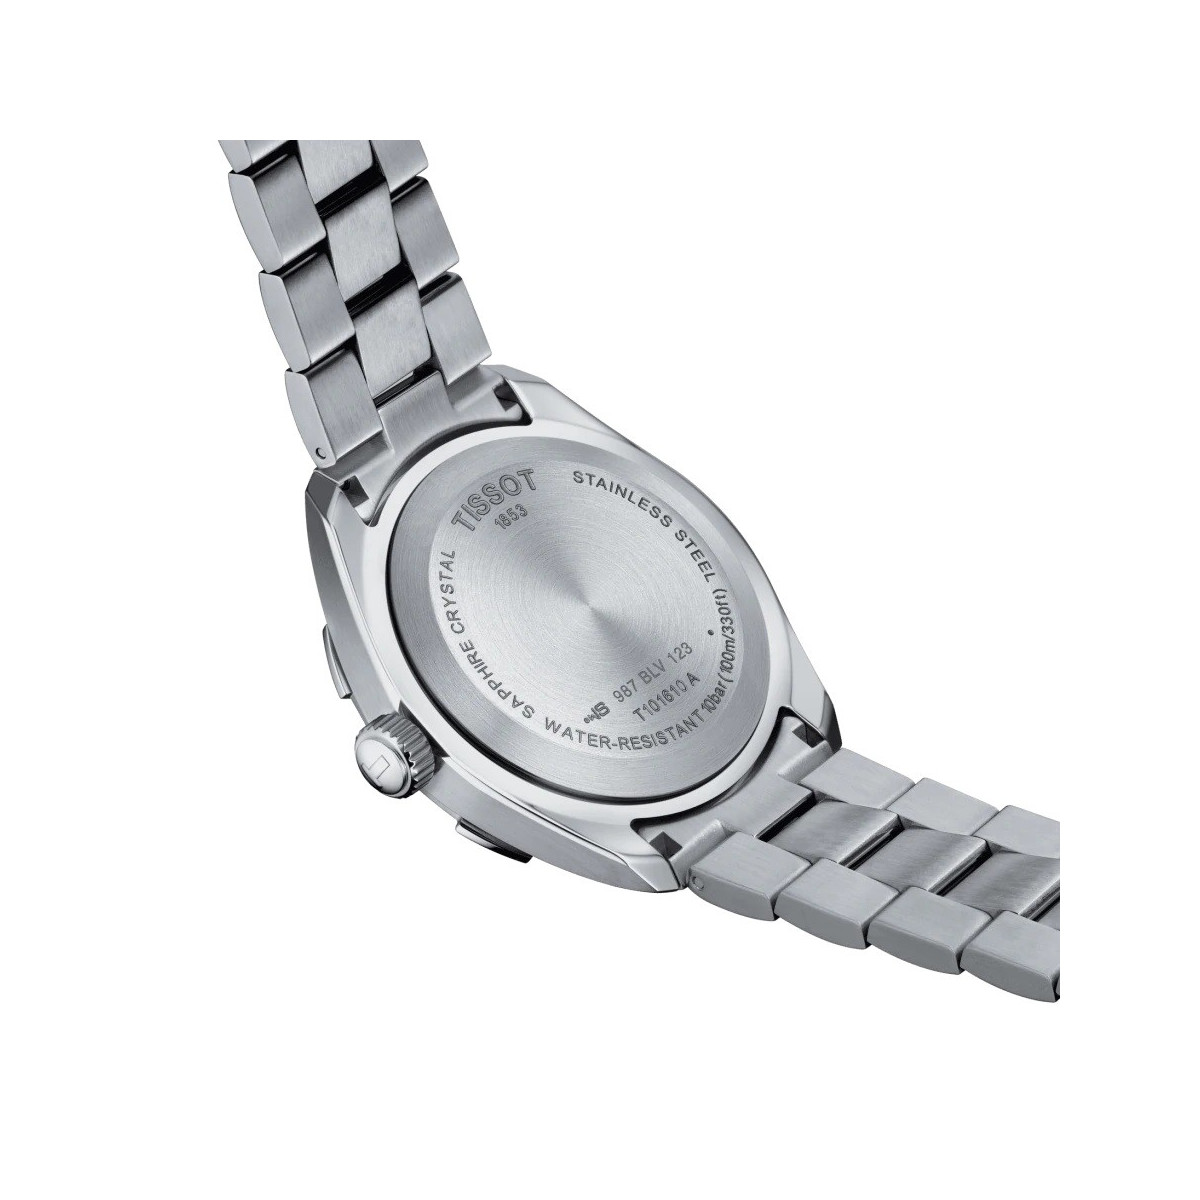 Reloj Tissot PR100 para caballero